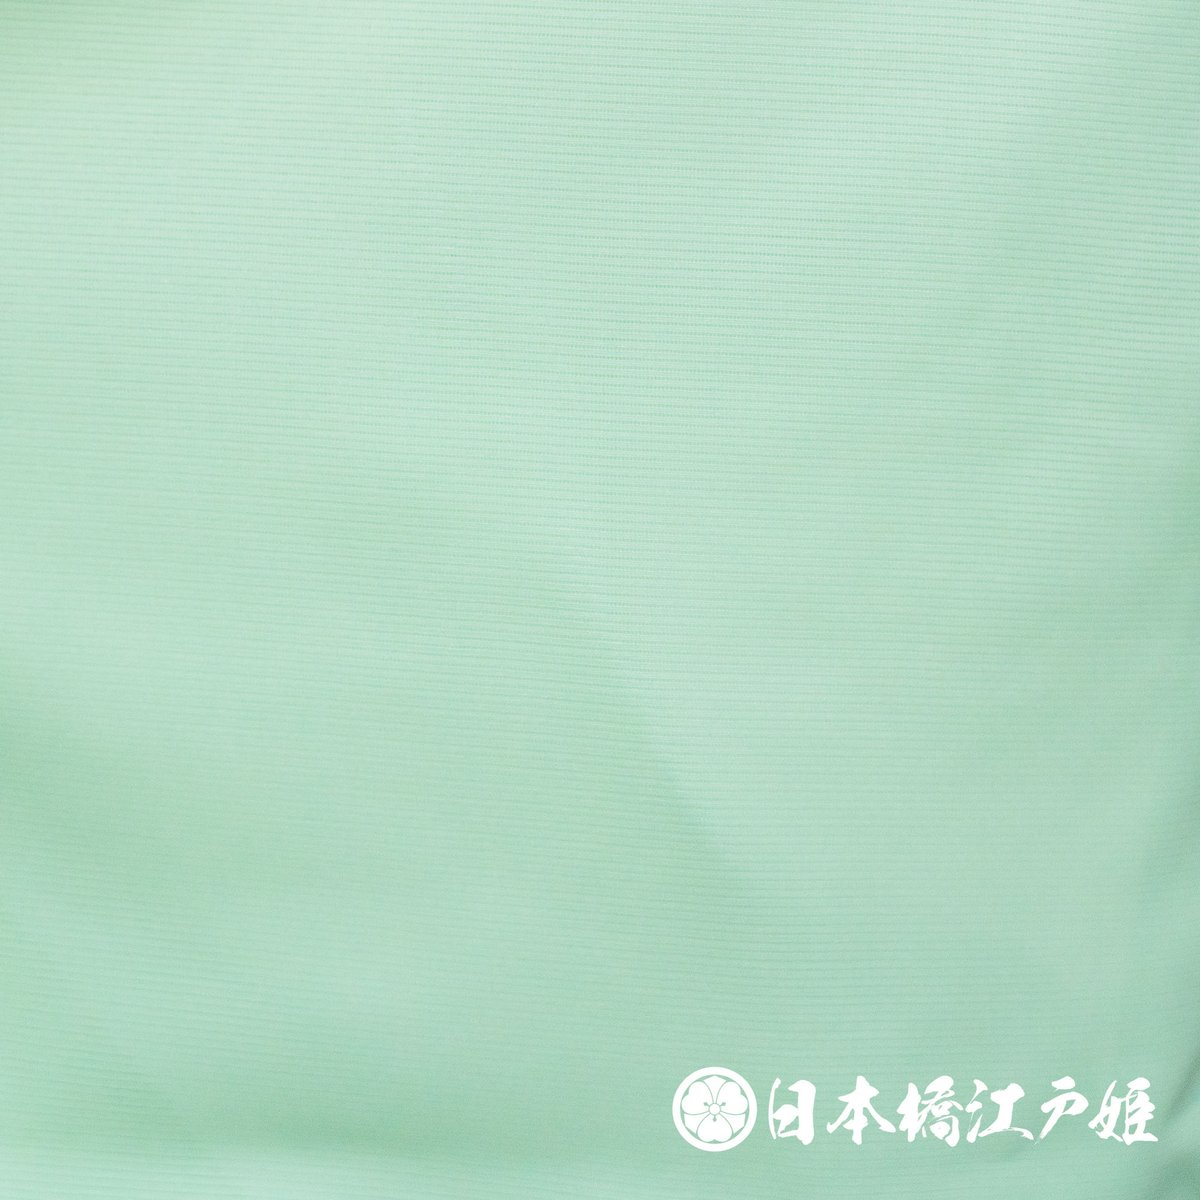 0280 夏物 色無地 薄物 絽 化繊 薄緑 身丈158cm | 日本橋江戸姫